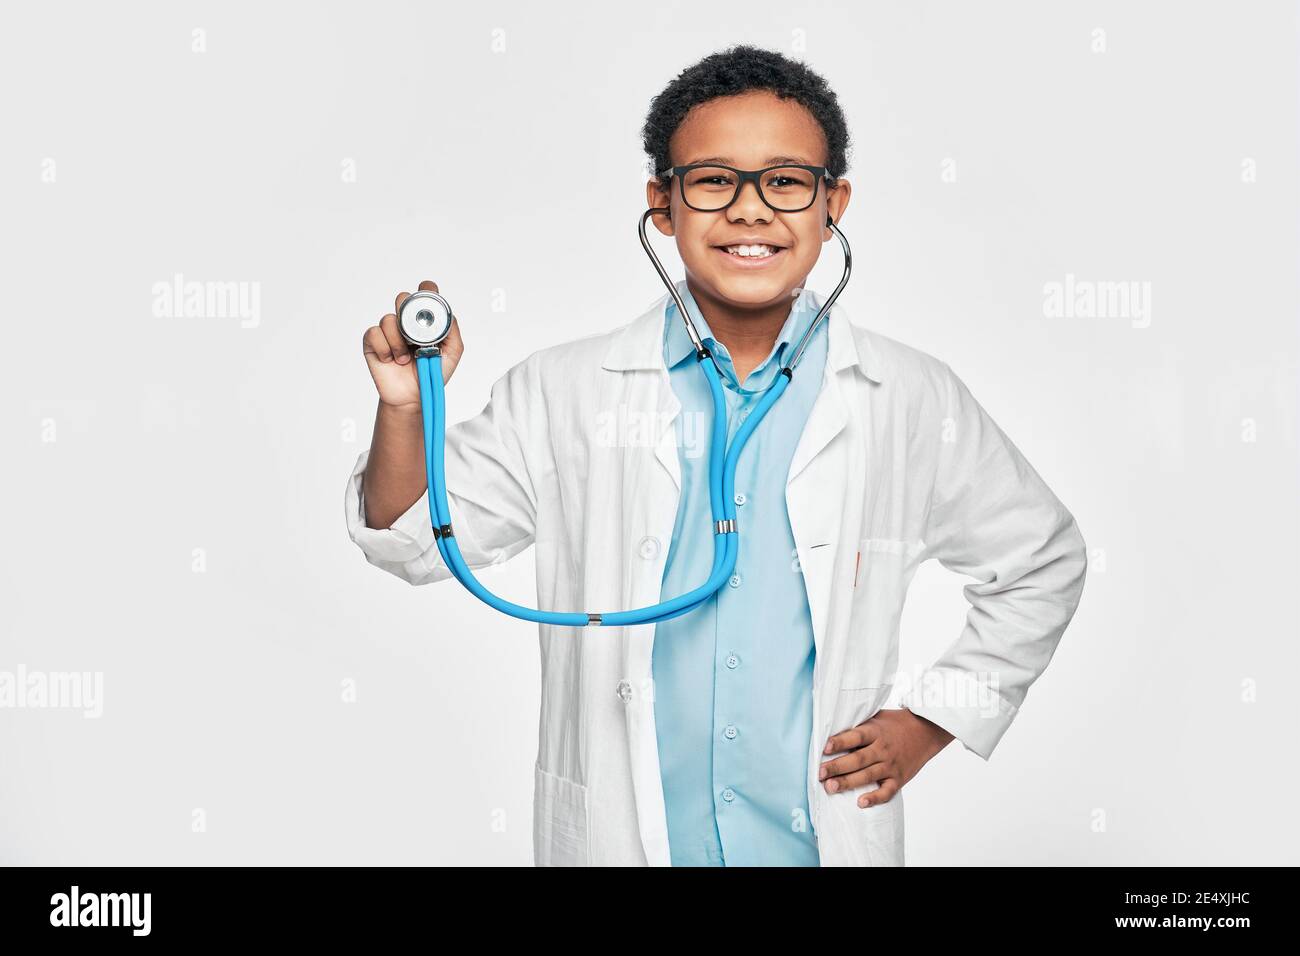 Afroamerikanischer Junge, der im Ärzteberuf mit einem Stethoskop spielt. Kinderhobby und zukünftige medizinische Beschäftigung. Weißer Hintergrund Stockfoto